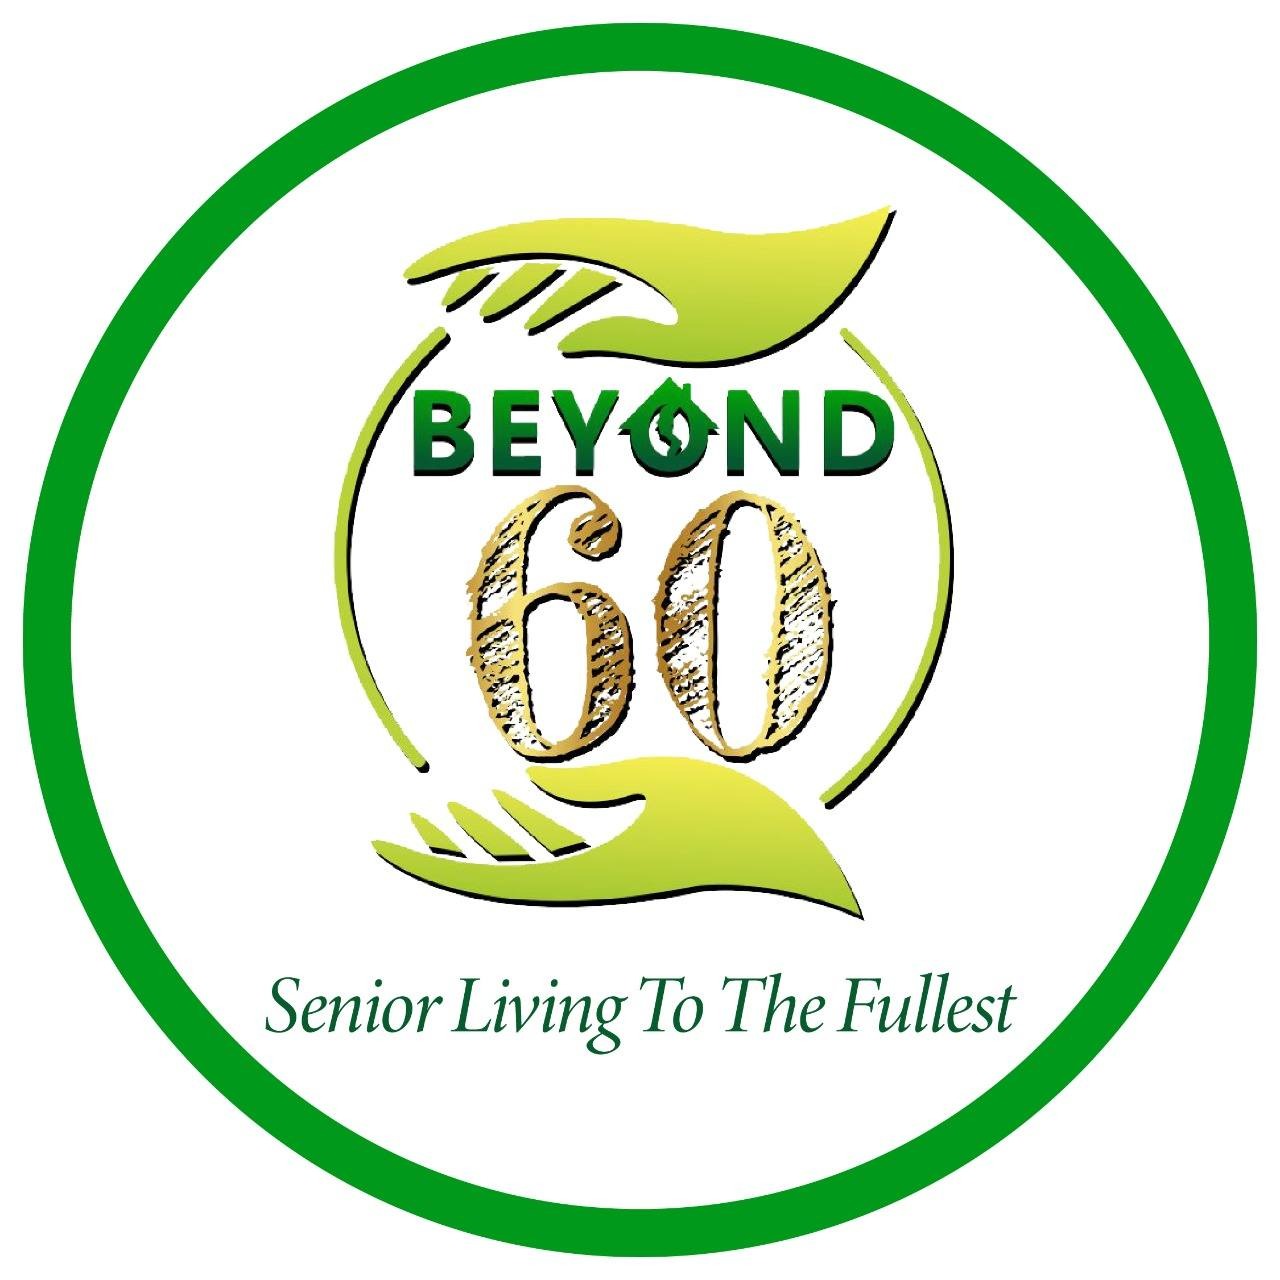 Beyond 60